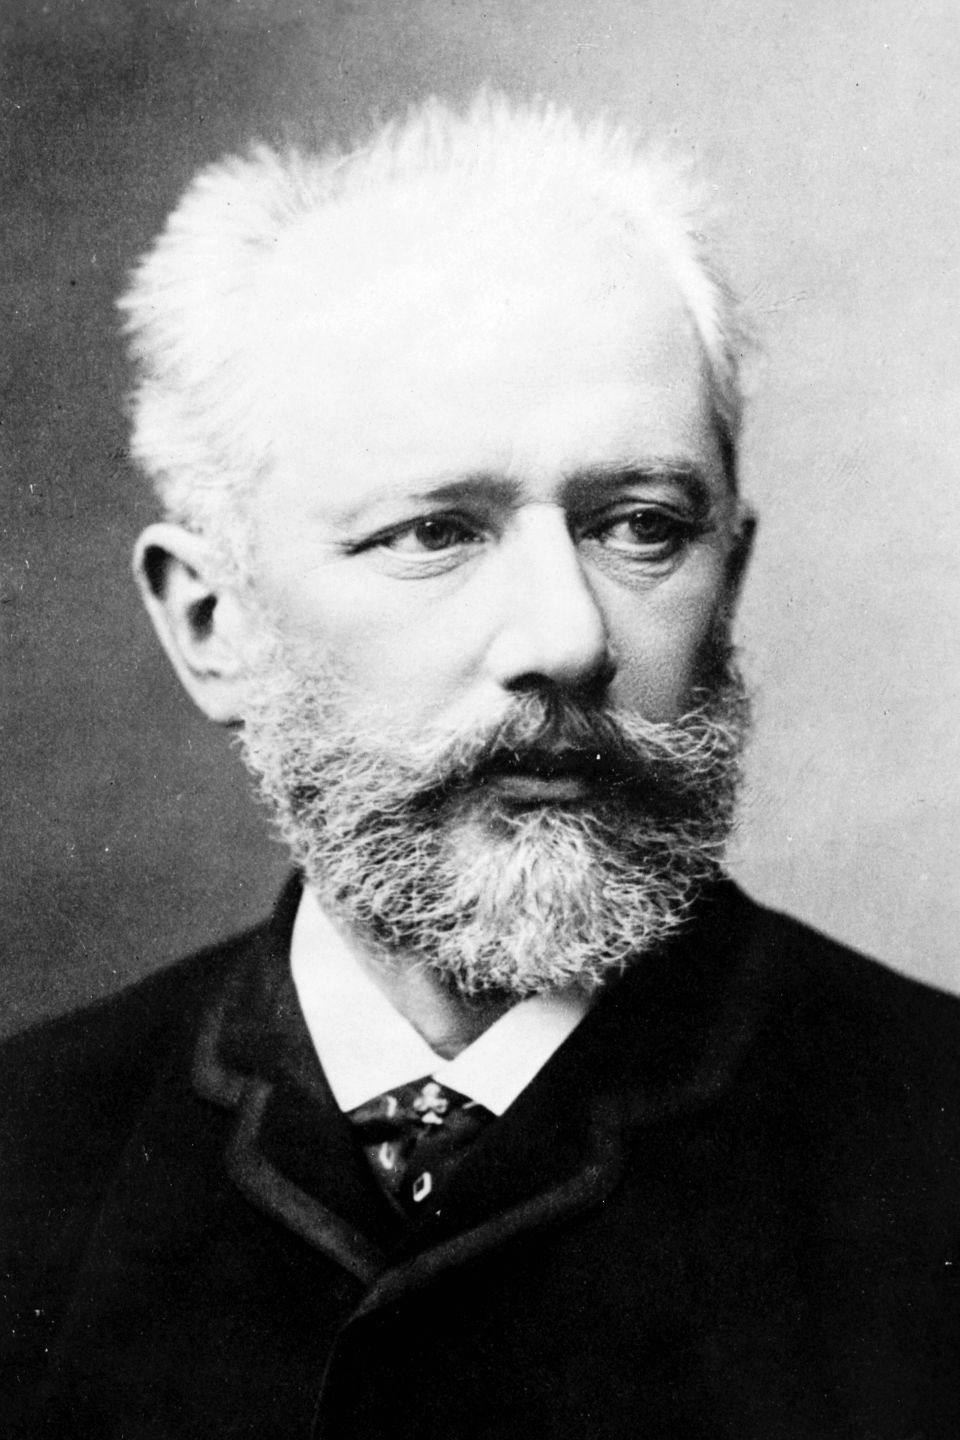 Tsjaikovski